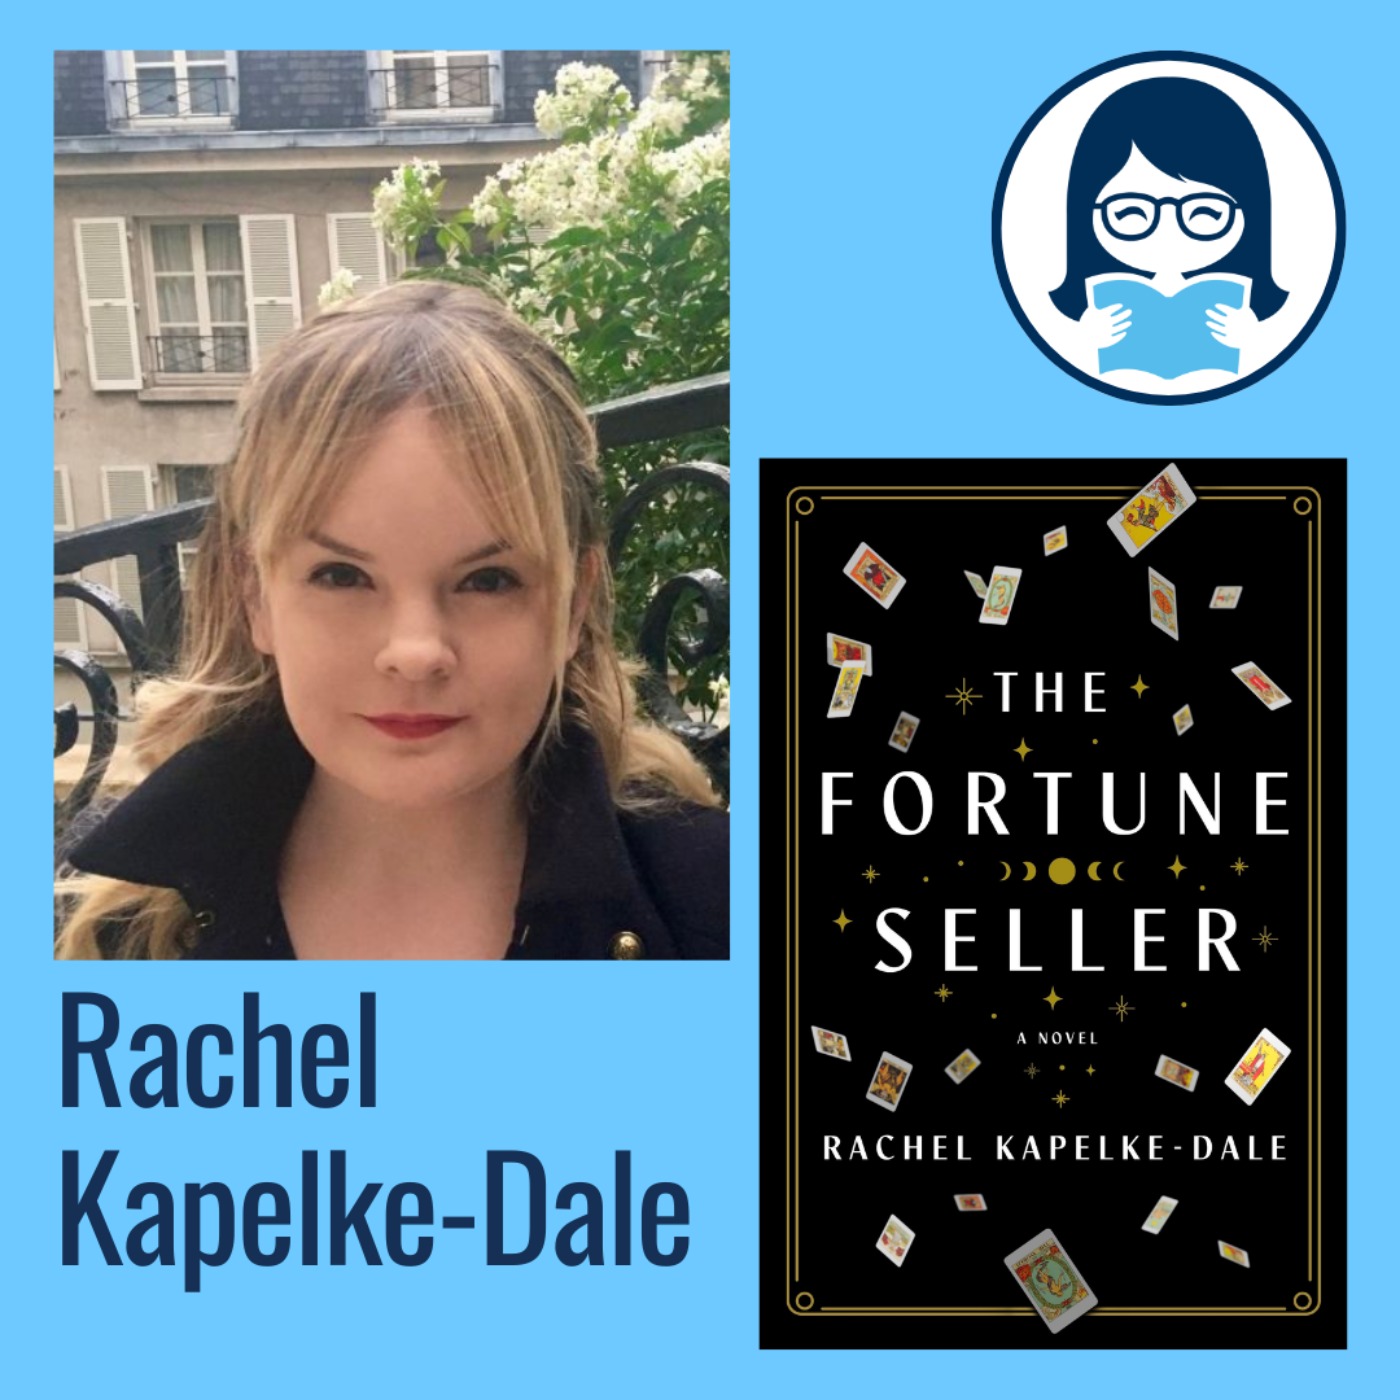 Rachel Kapelke-Dale, THE FORTUNE SELLER